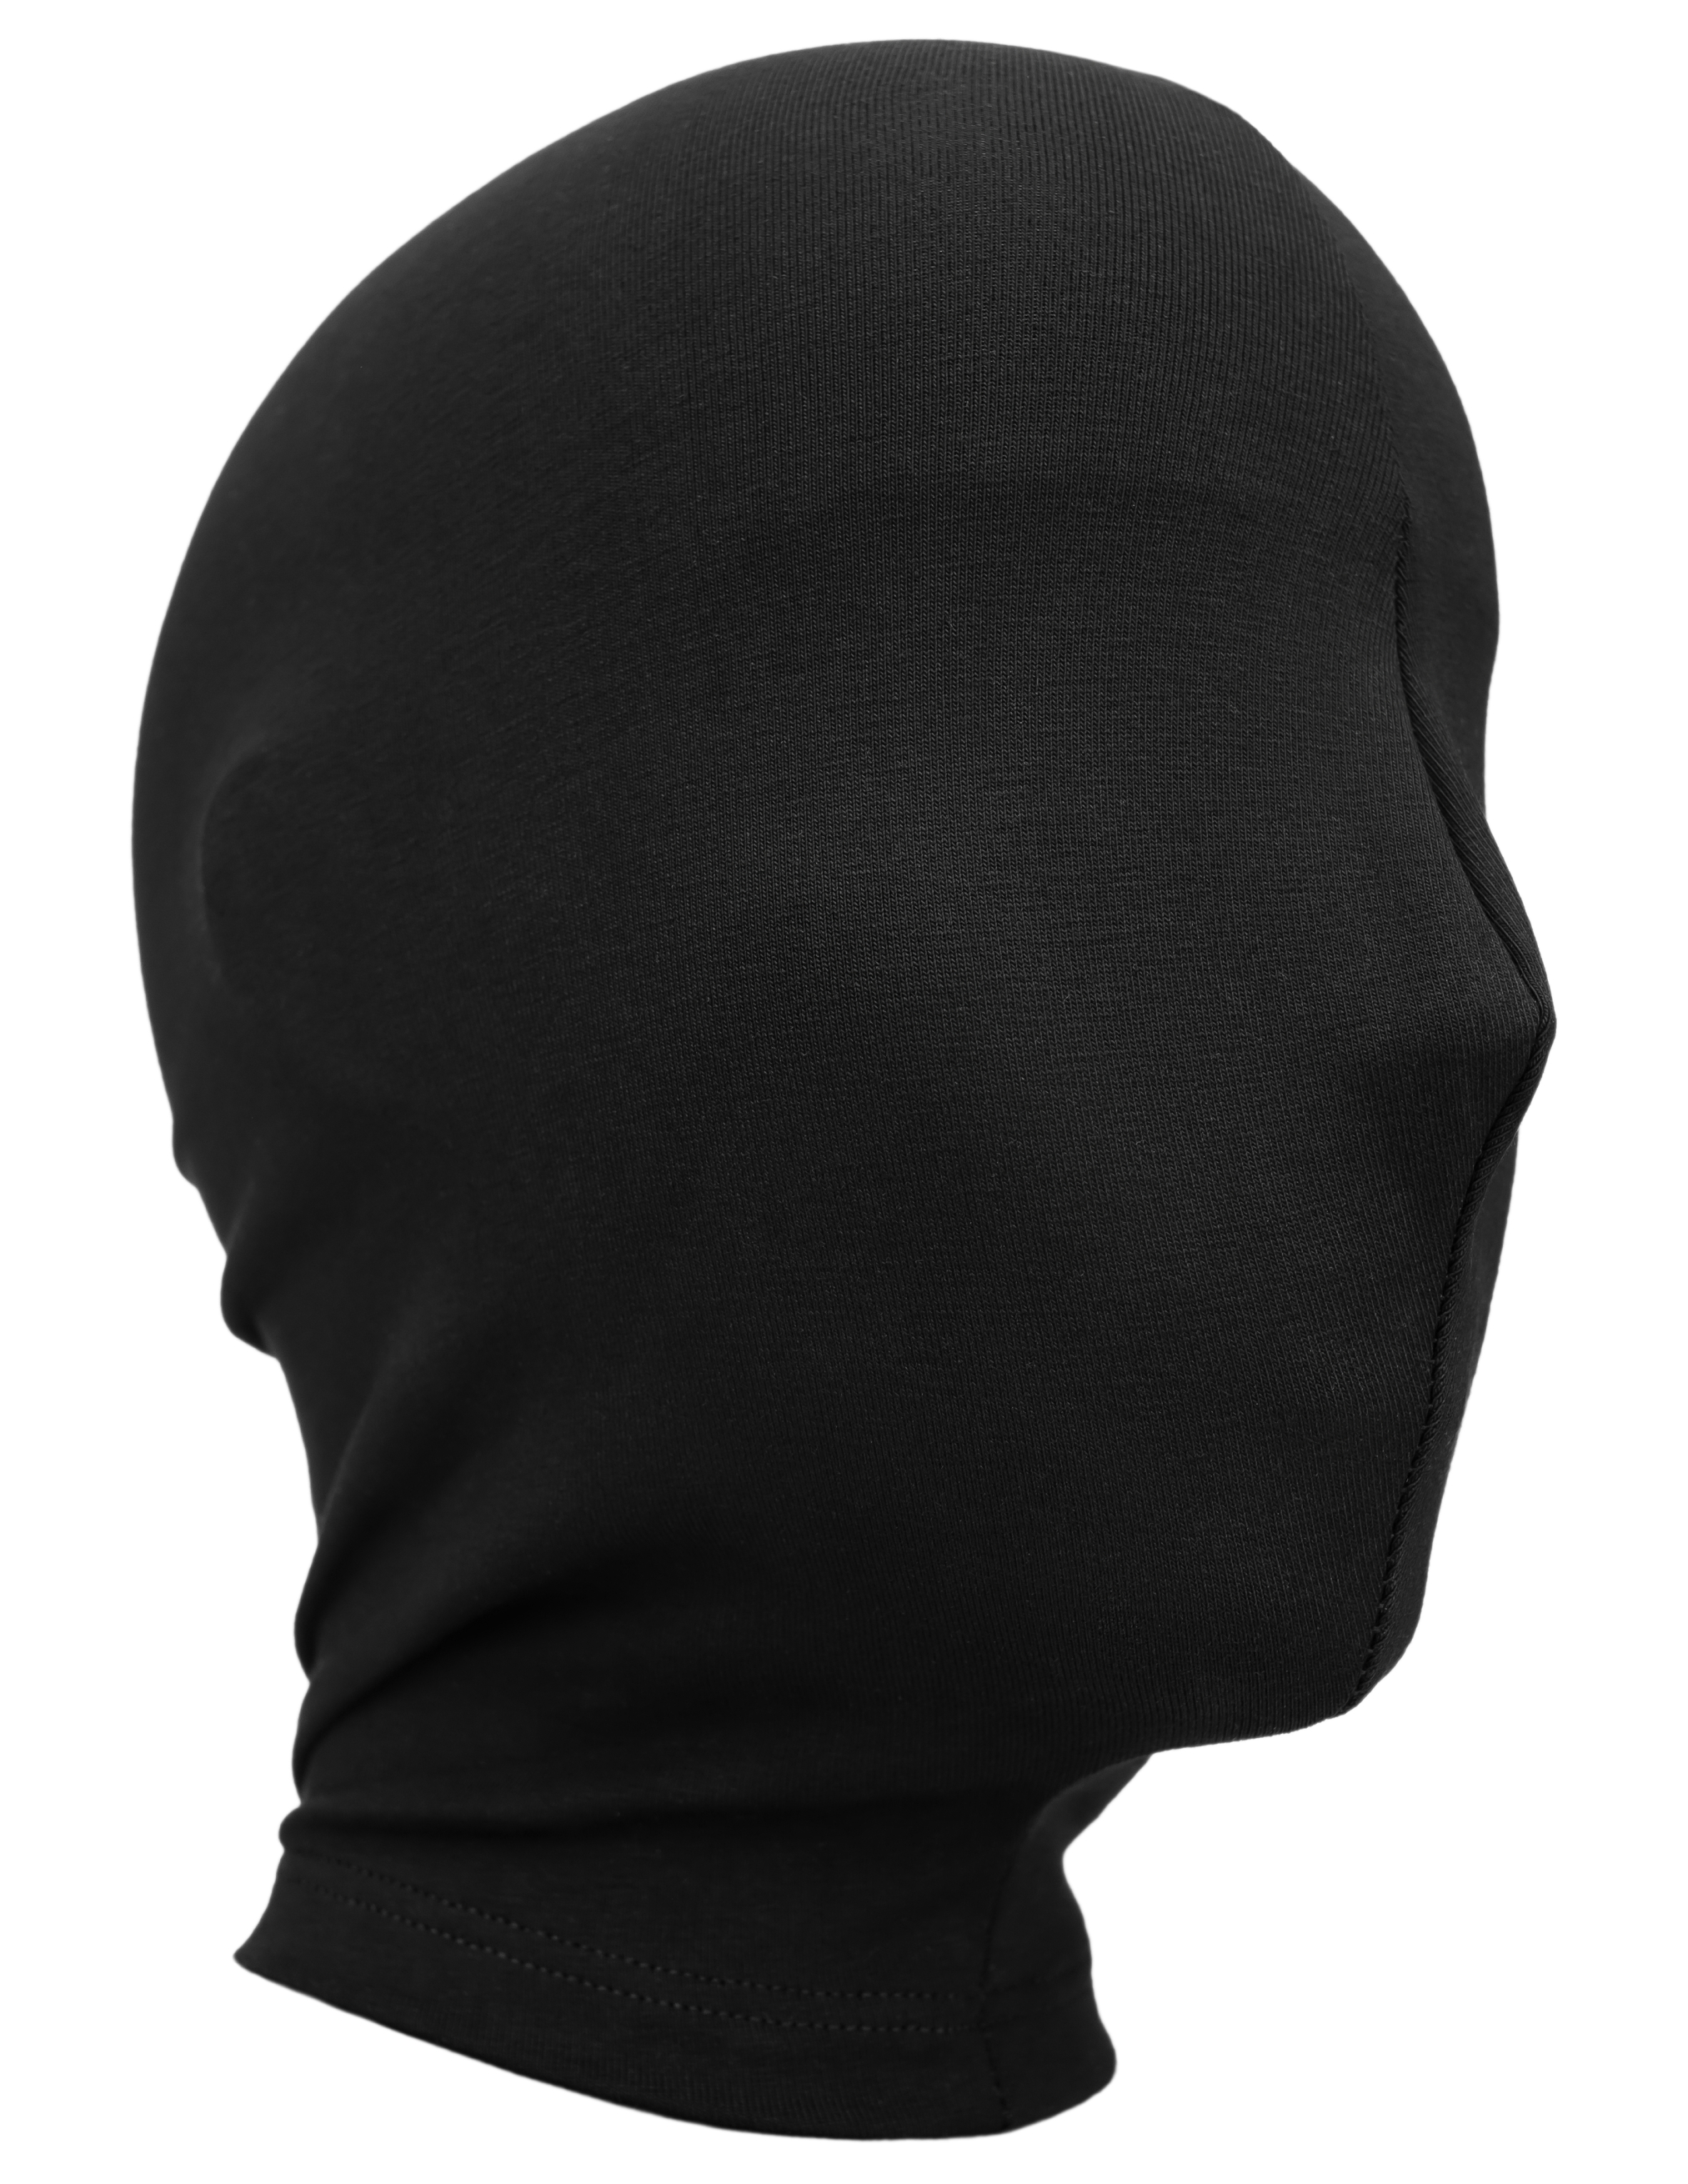 Черная маска VETEMENTS UA53MA100B/2748, размер XL;M;S UA53MA100B/2748 - фото 1